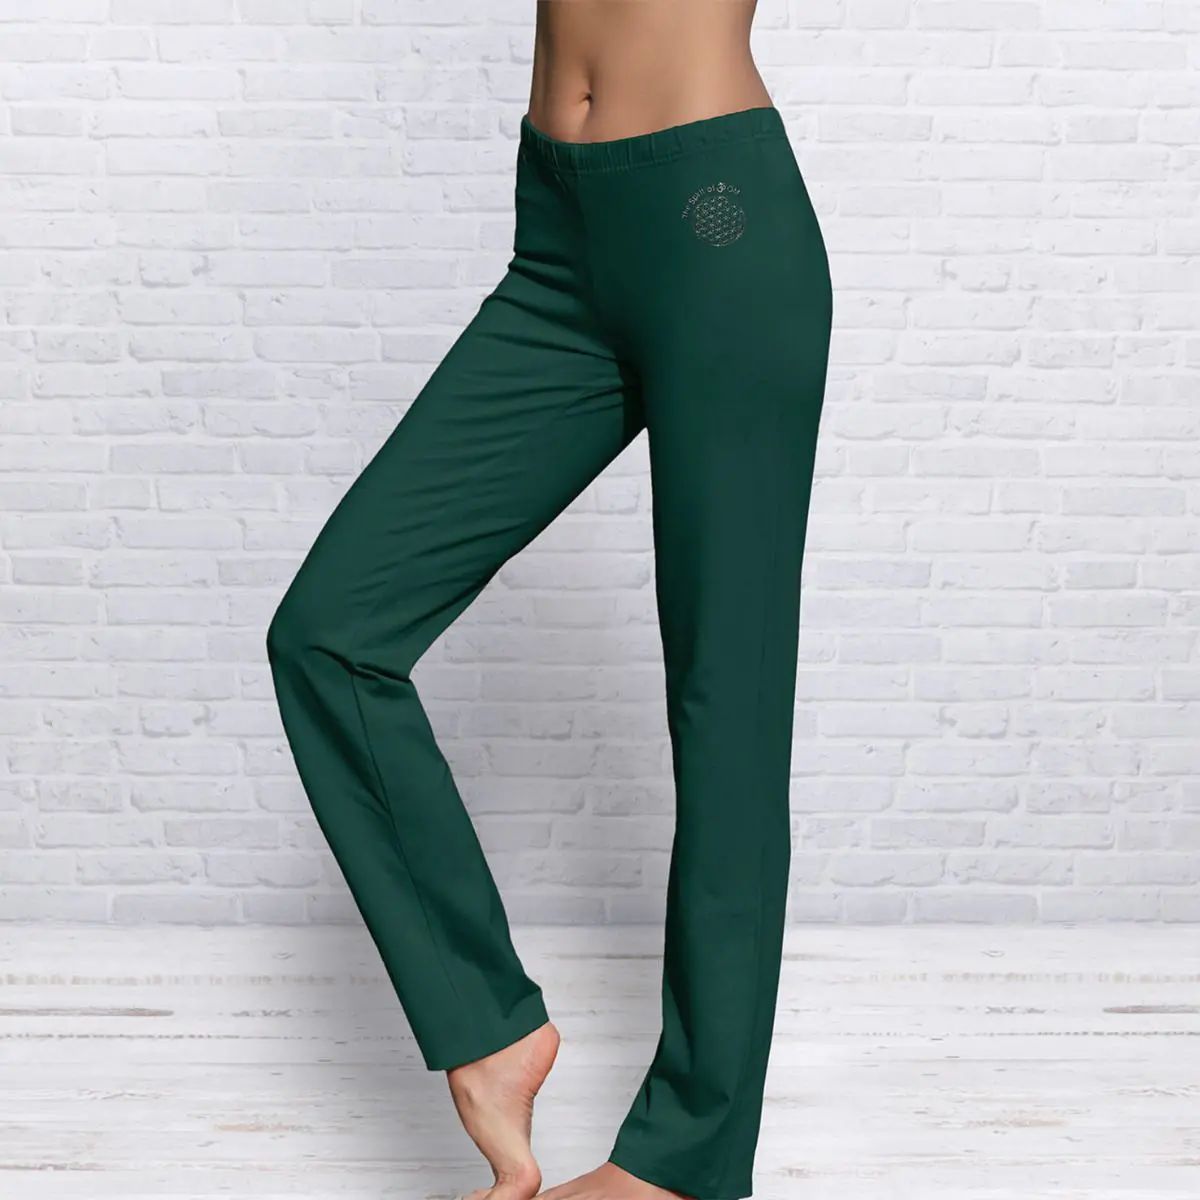 The Spirit of OM wellness kalhoty z bio bavlny dlouhé unisex - tmavě zelené Velikost: L